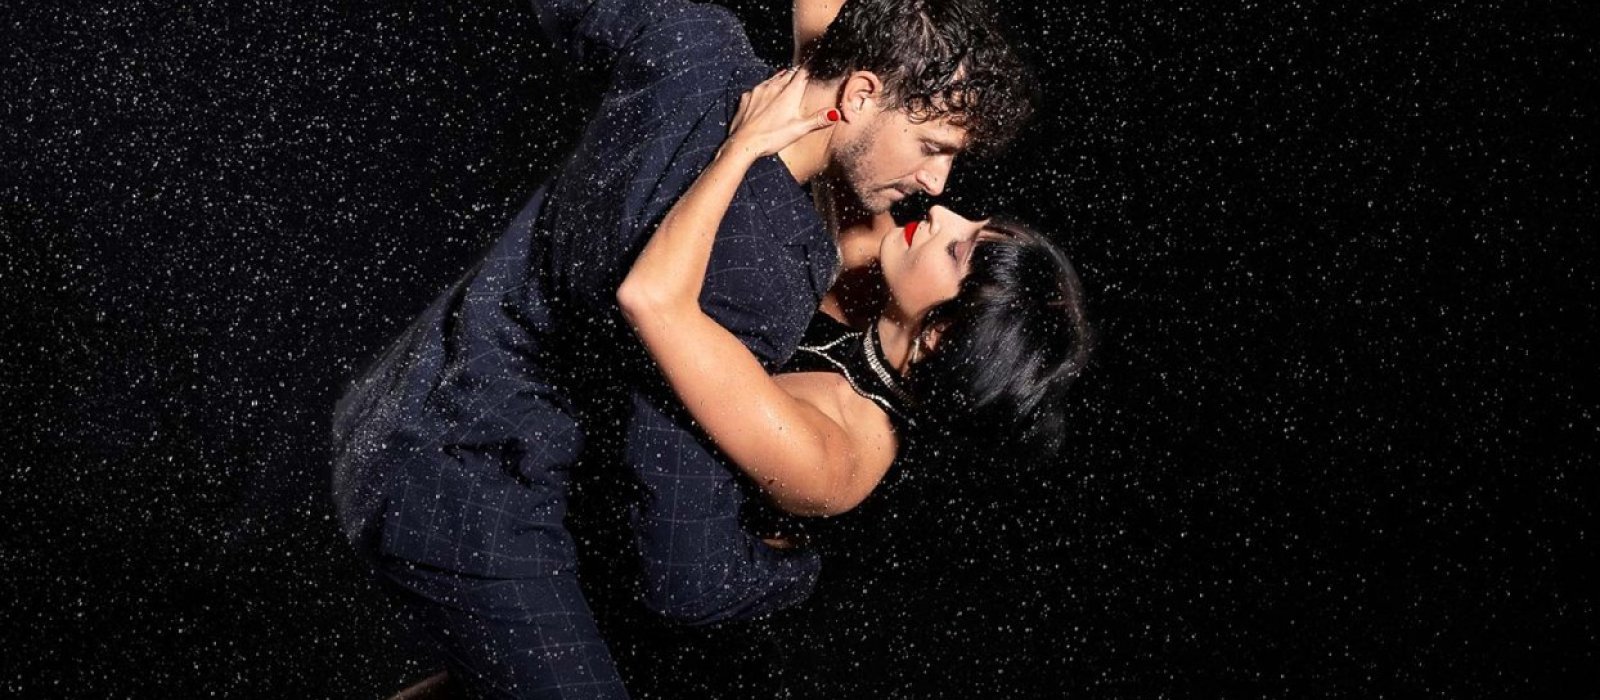 Two tango dancers wearing black in the rain.